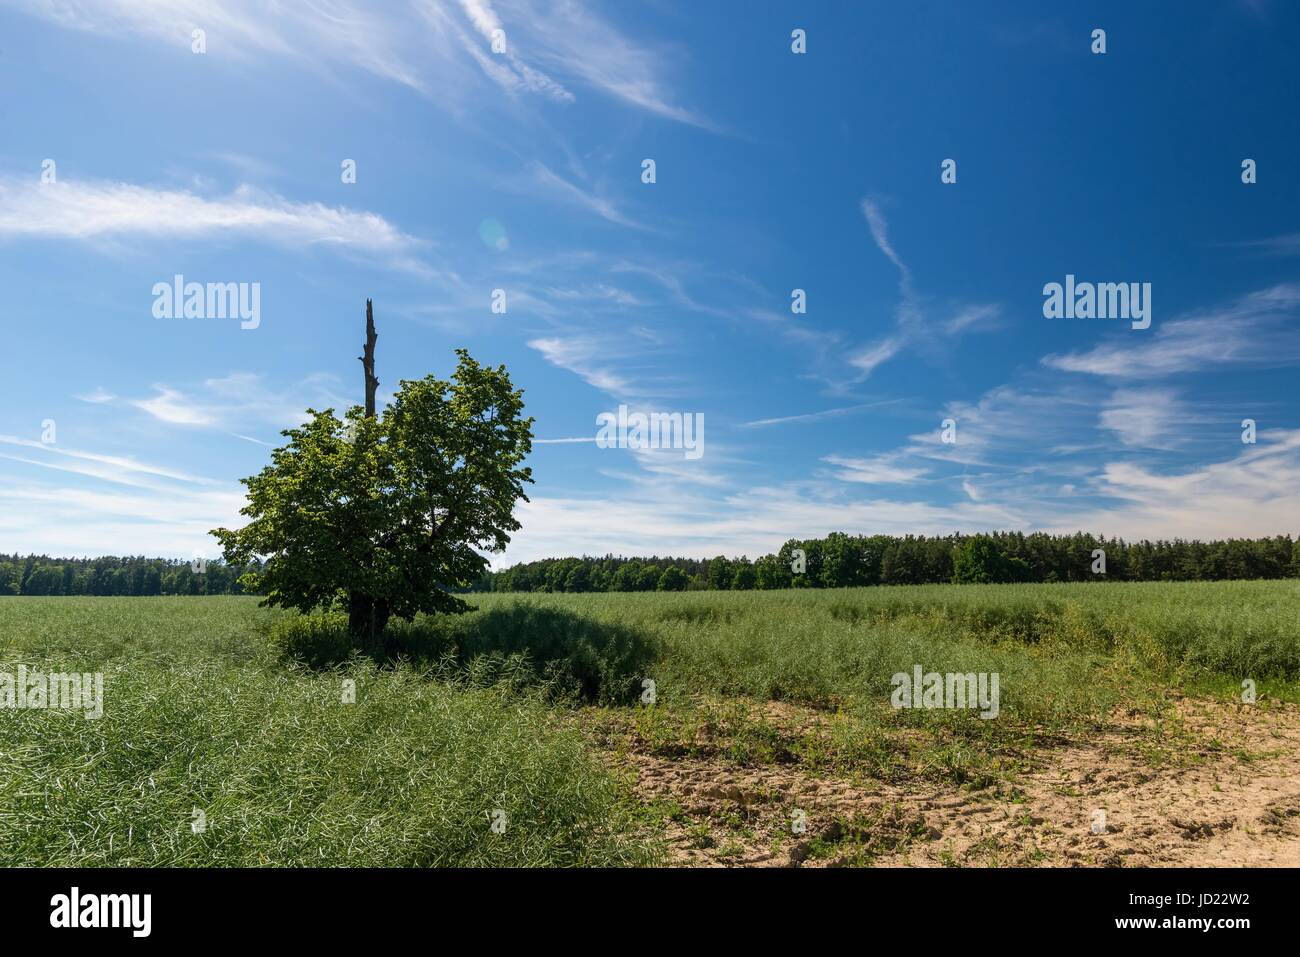 Foto orizzontale con il paesaggio naturale del motivo unico albero che ha secco ramo superiore danneggiata da un fulmine in un campo con sbiaditi piante di colza. Dark Foto Stock